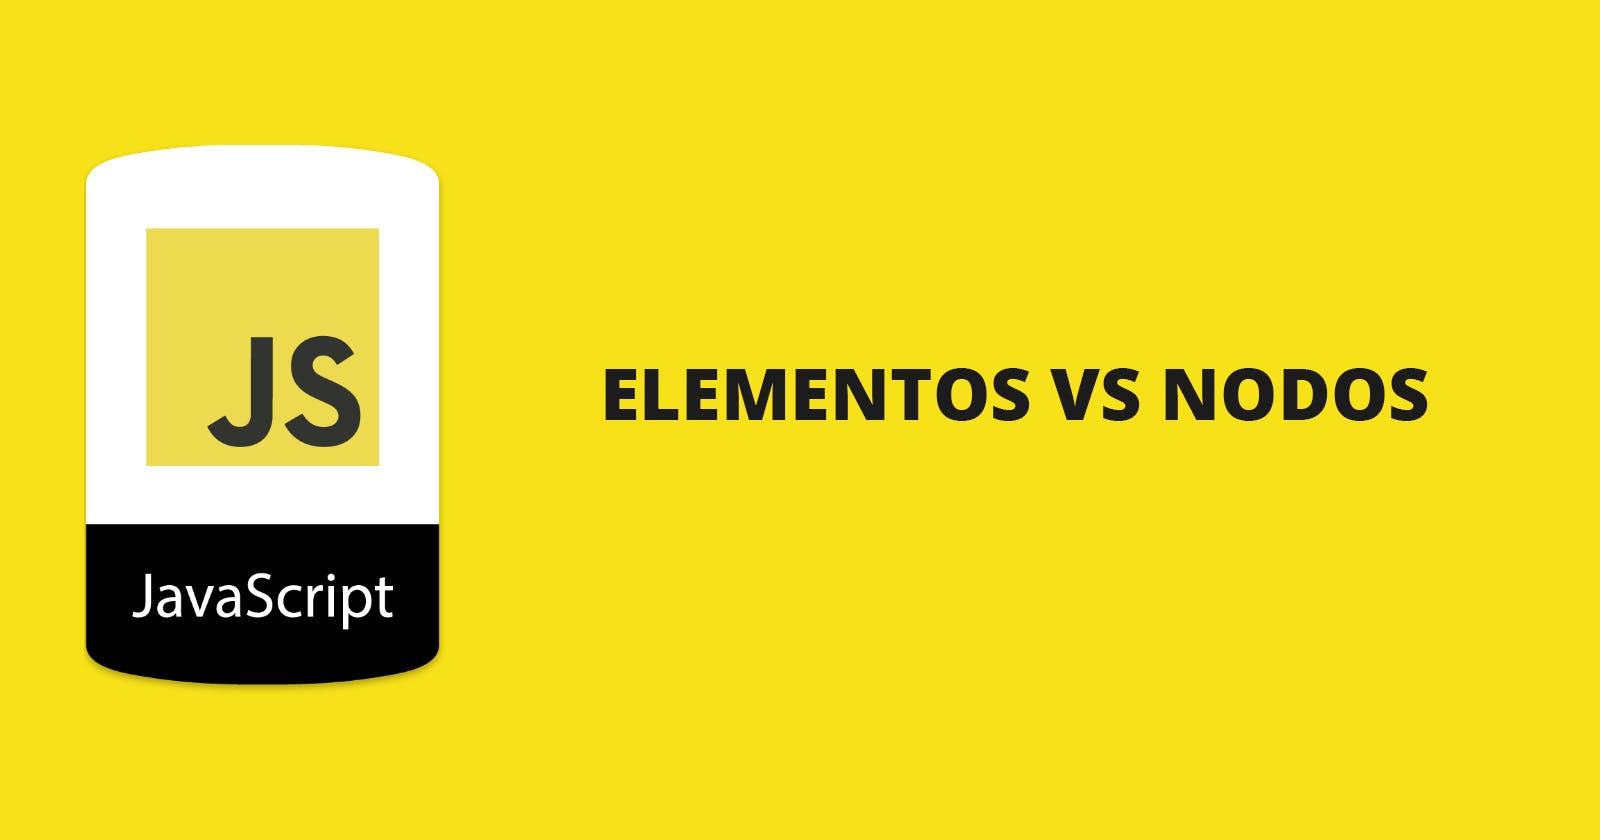 Elementos vs nodos en JavaScript